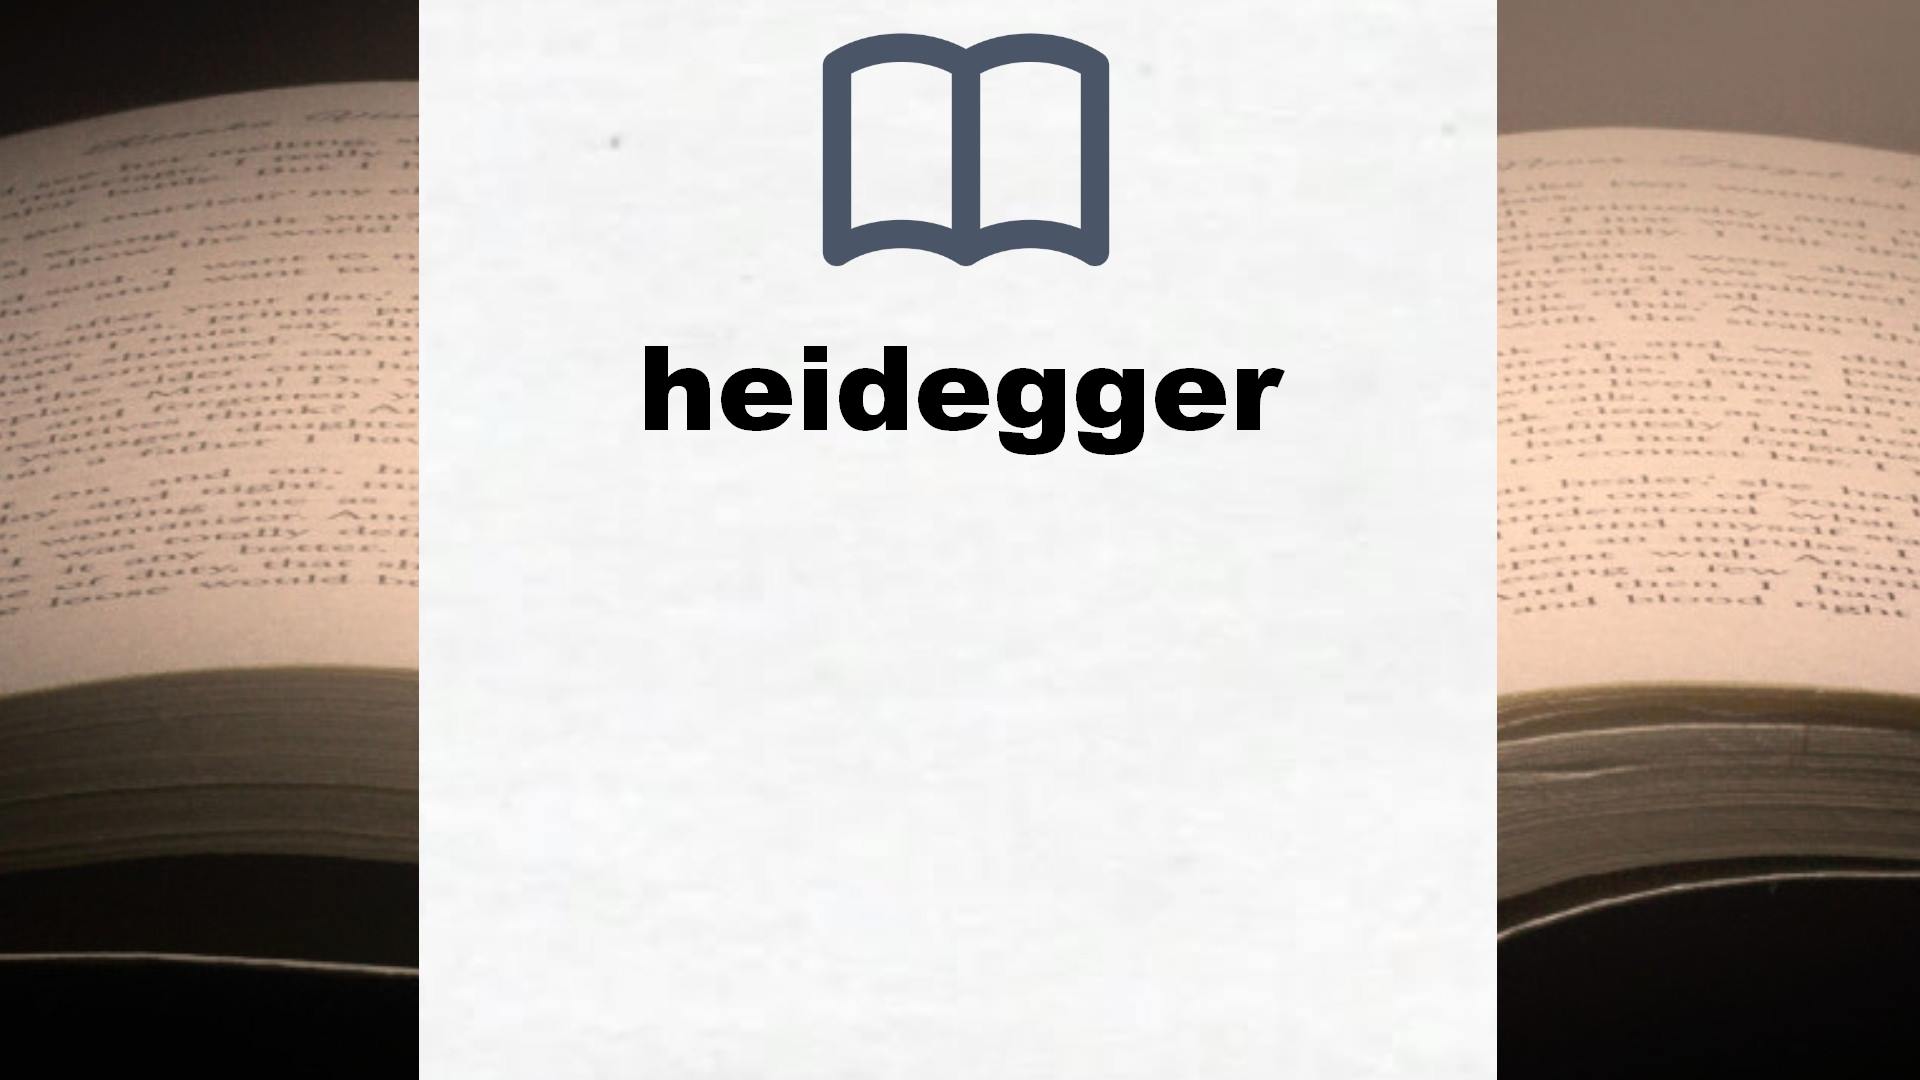 Libros sobre heidegger